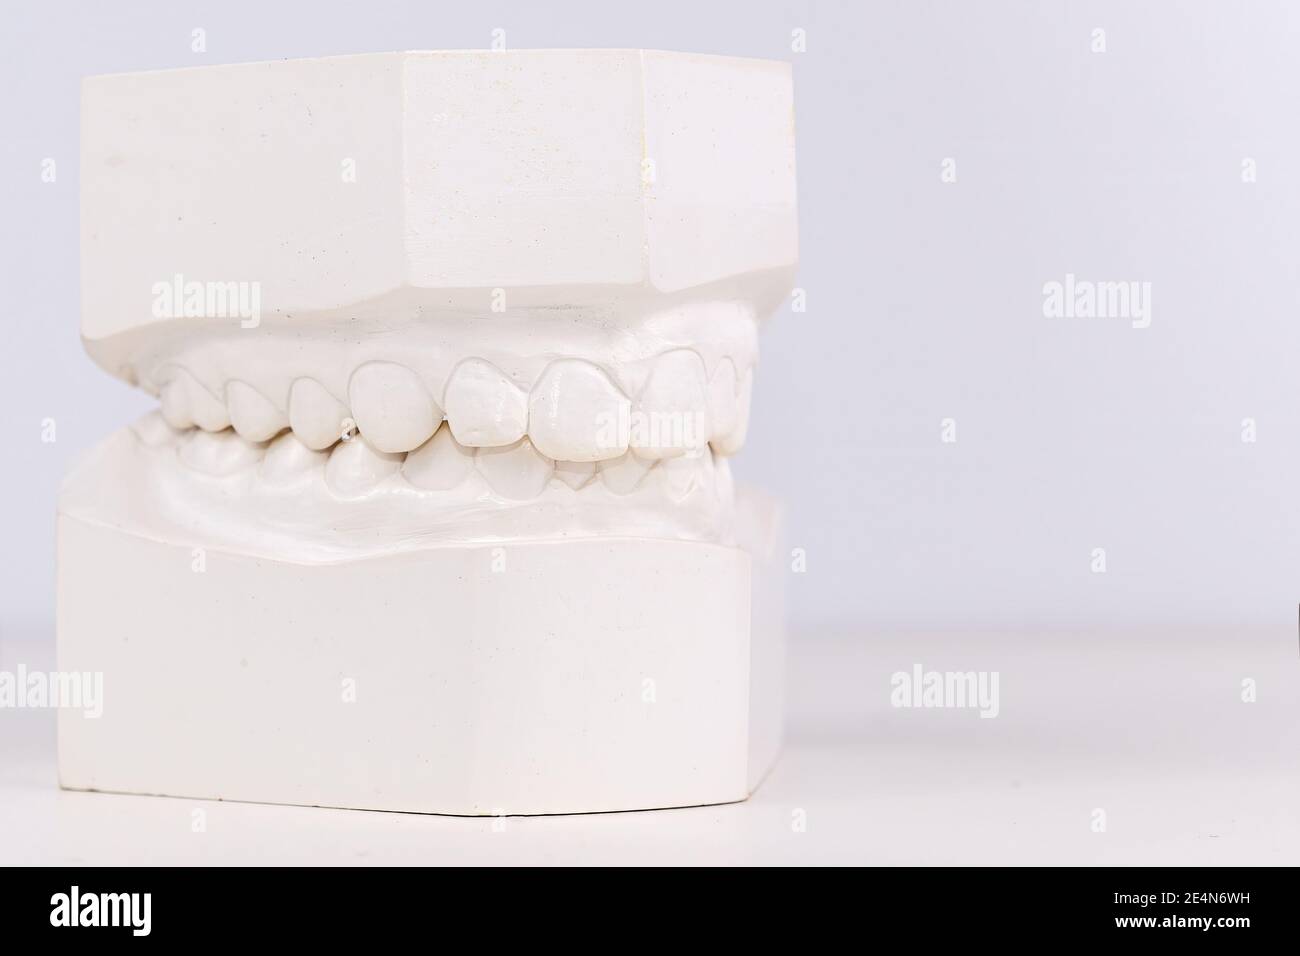 Denti umani dentali bianchi che colano su sfondo bianco. Vista in primo piano ad angolo basso. Ganasce superiore e inferiore. Profondità di campo poco profonda. Foto Stock